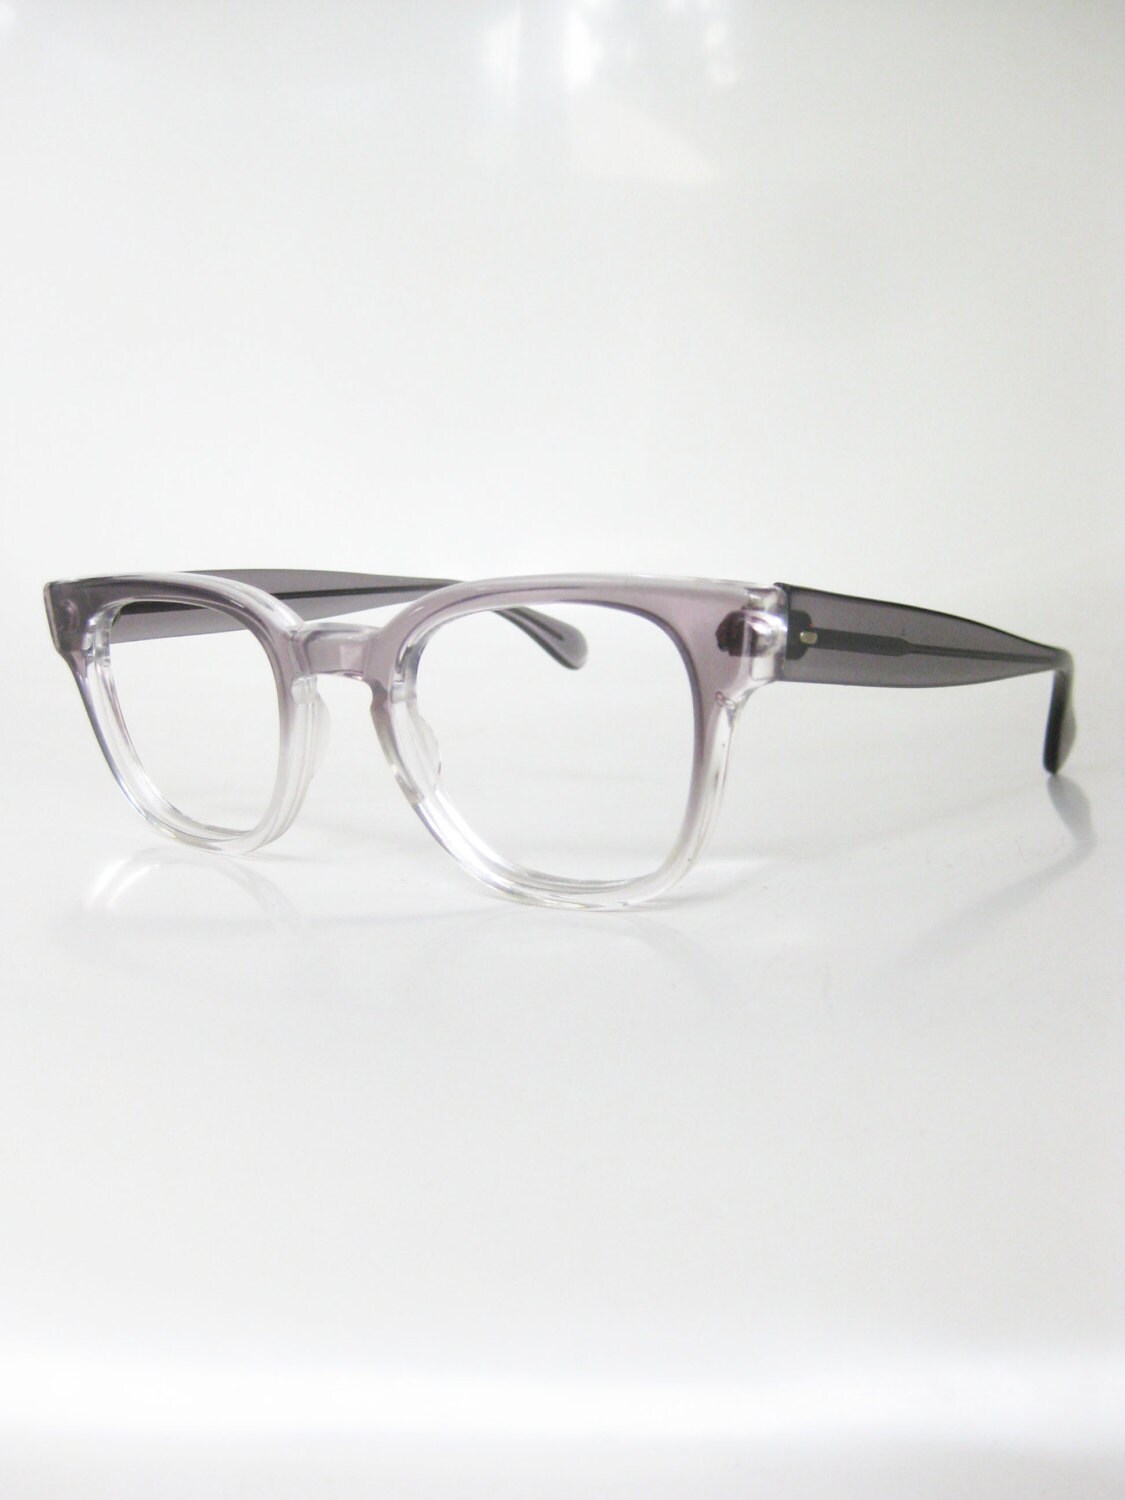 1950s Horn Rim Eyeglasses Glasses Mens Guys Optical Frames Mad 